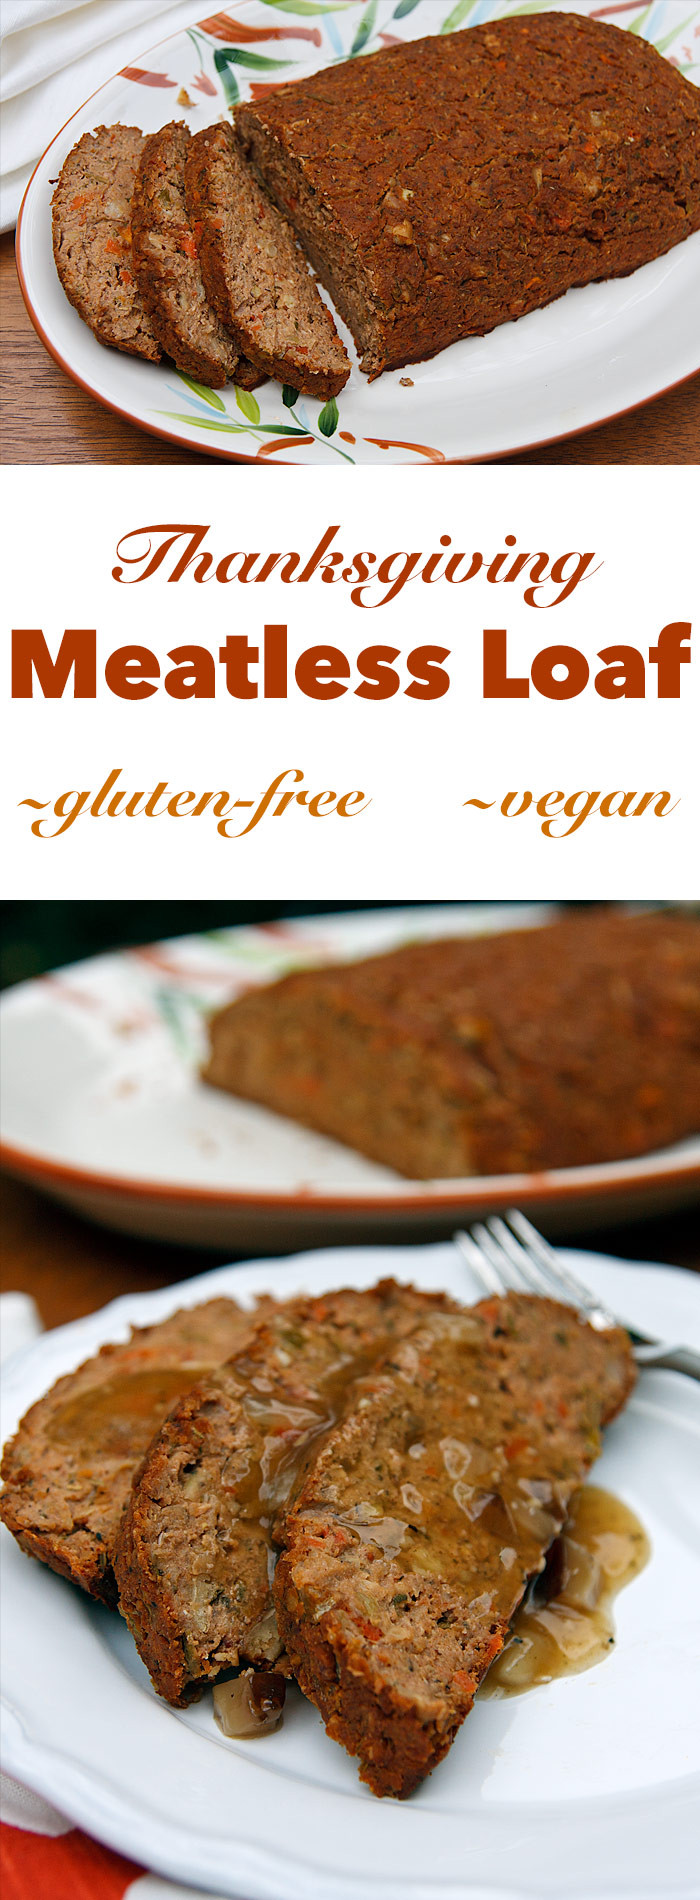 Vegetarian Thanksgiving Loaf
 Thanksgiving Meatless Loaf